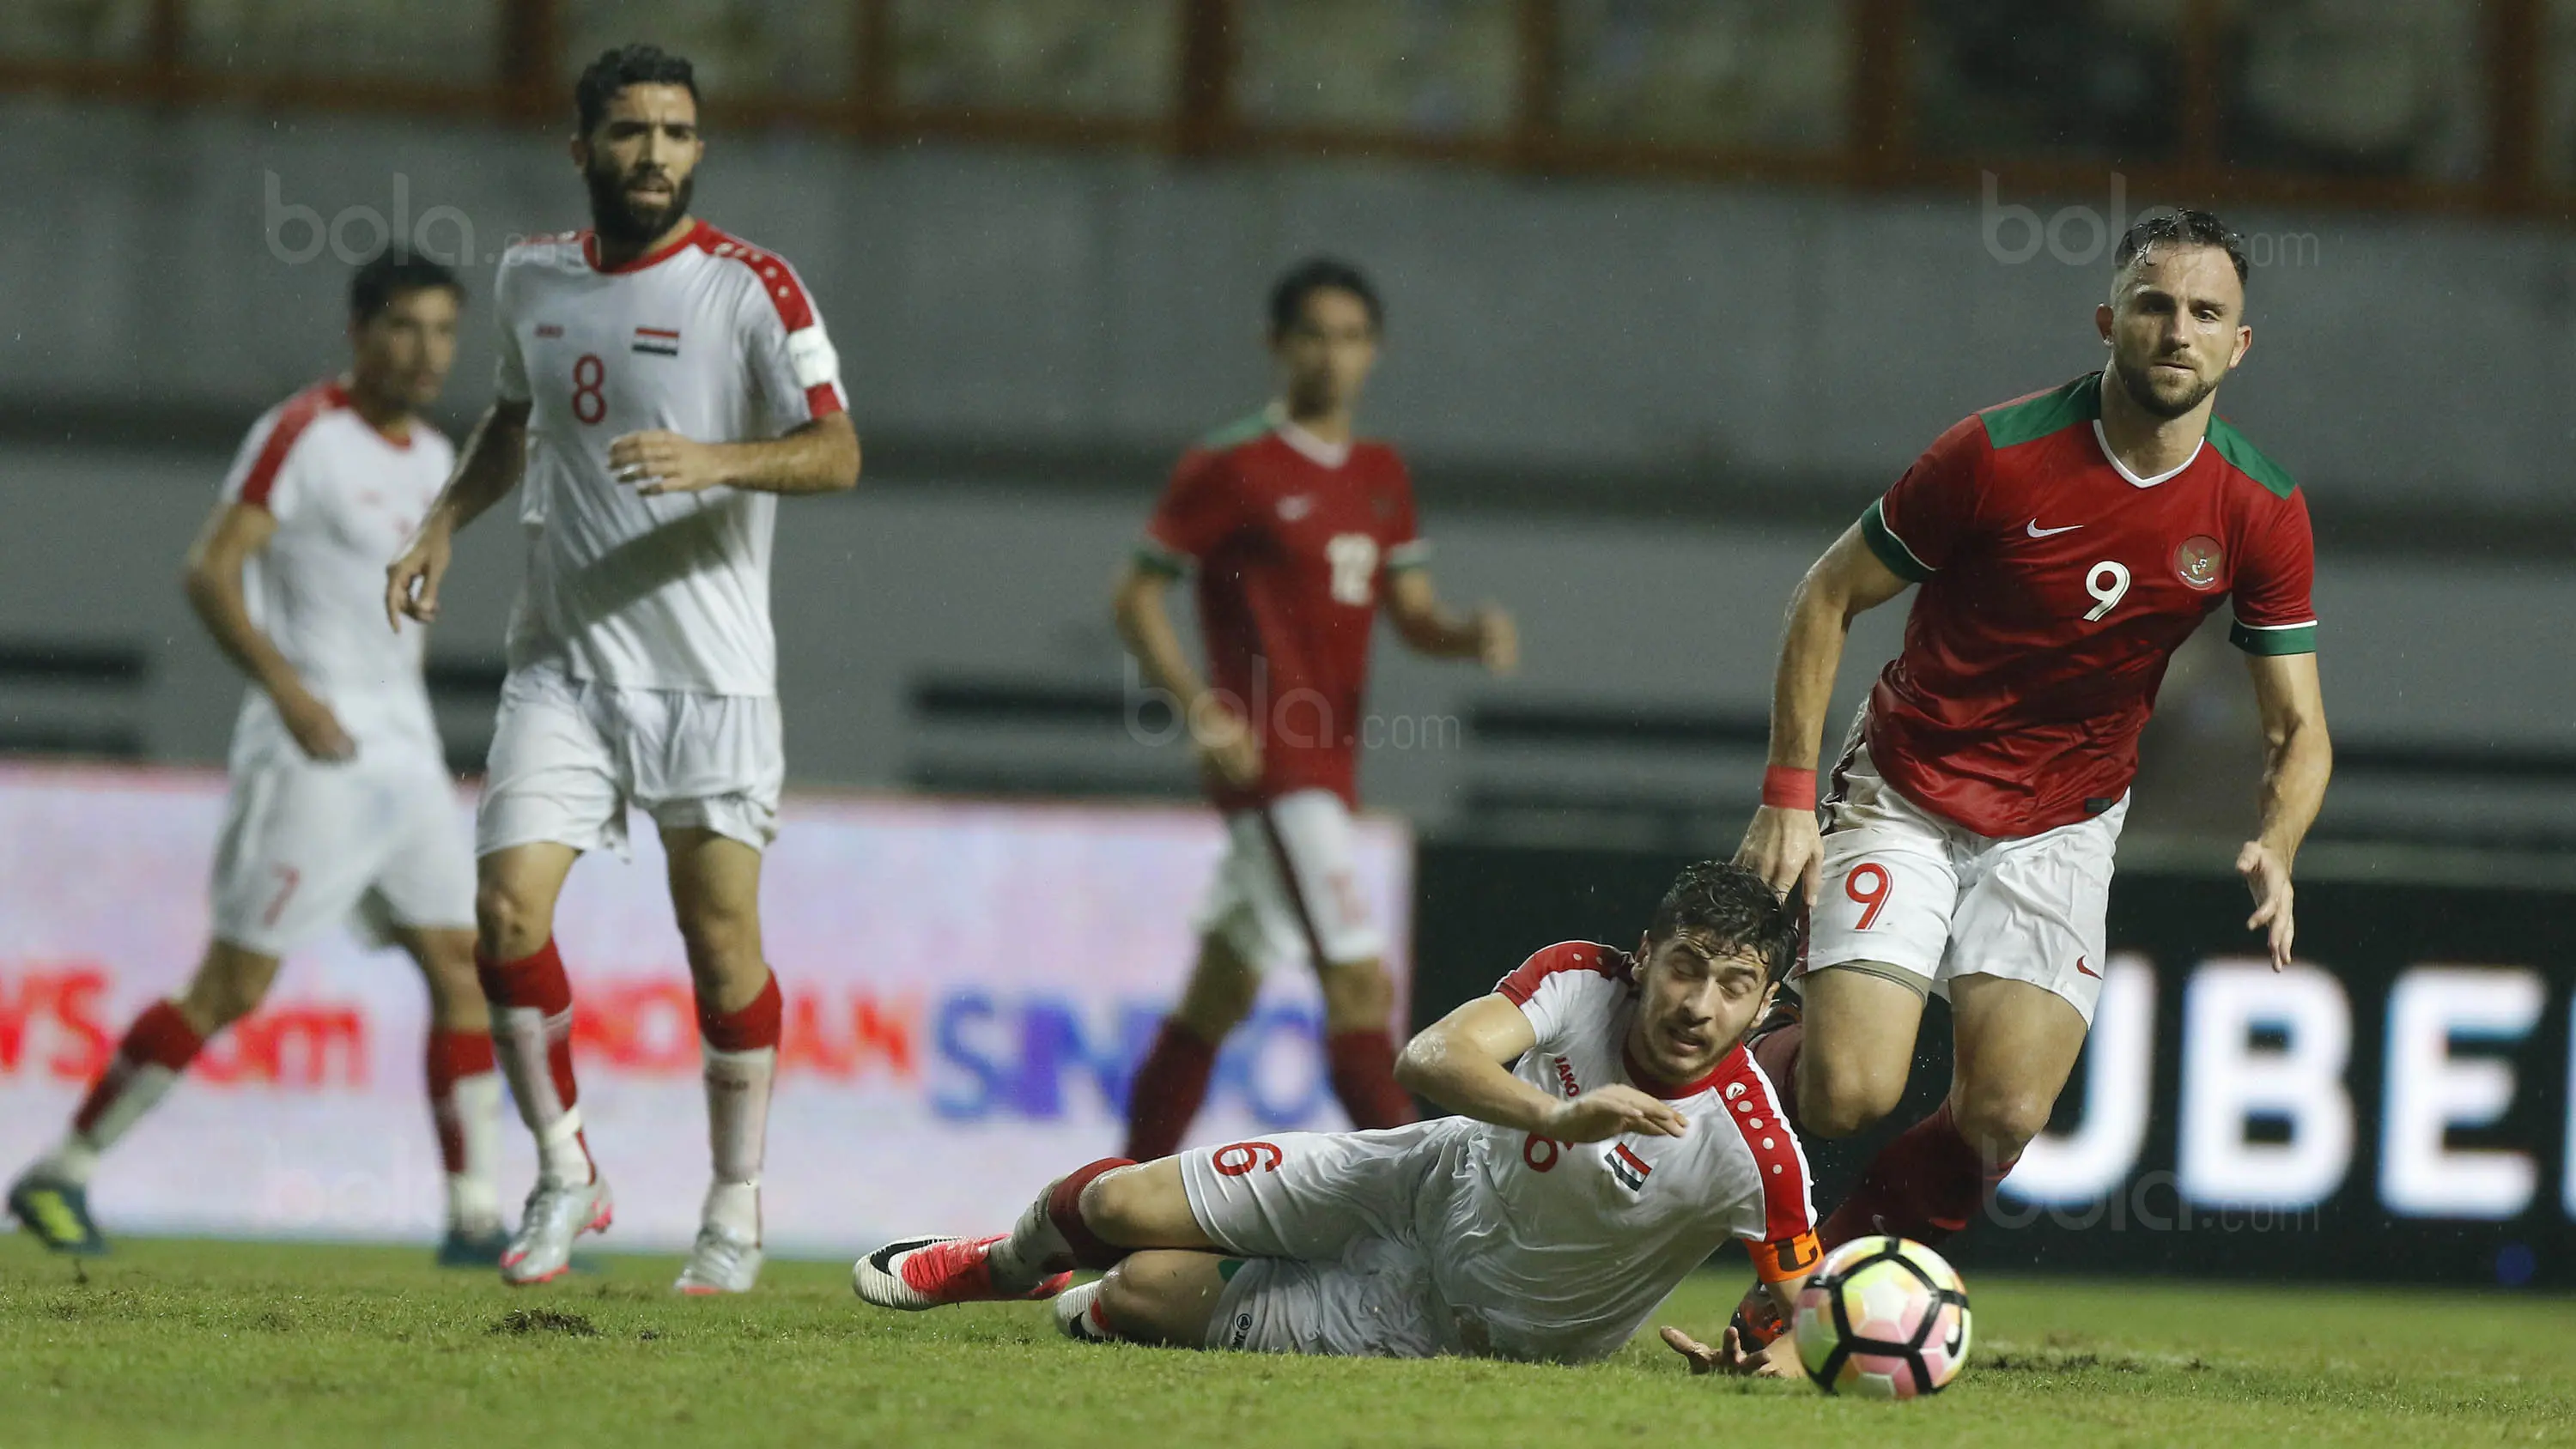 Timnas Indonesia saat pertandingan melawan Suriah U-23 di Stadion Wibawa Mukti, Cikarang, Sabtu (18/11/2017). Indonesia kalah 0-1 dari Suriah U-23. (Bola.com/ M Iqbal Ichsan)